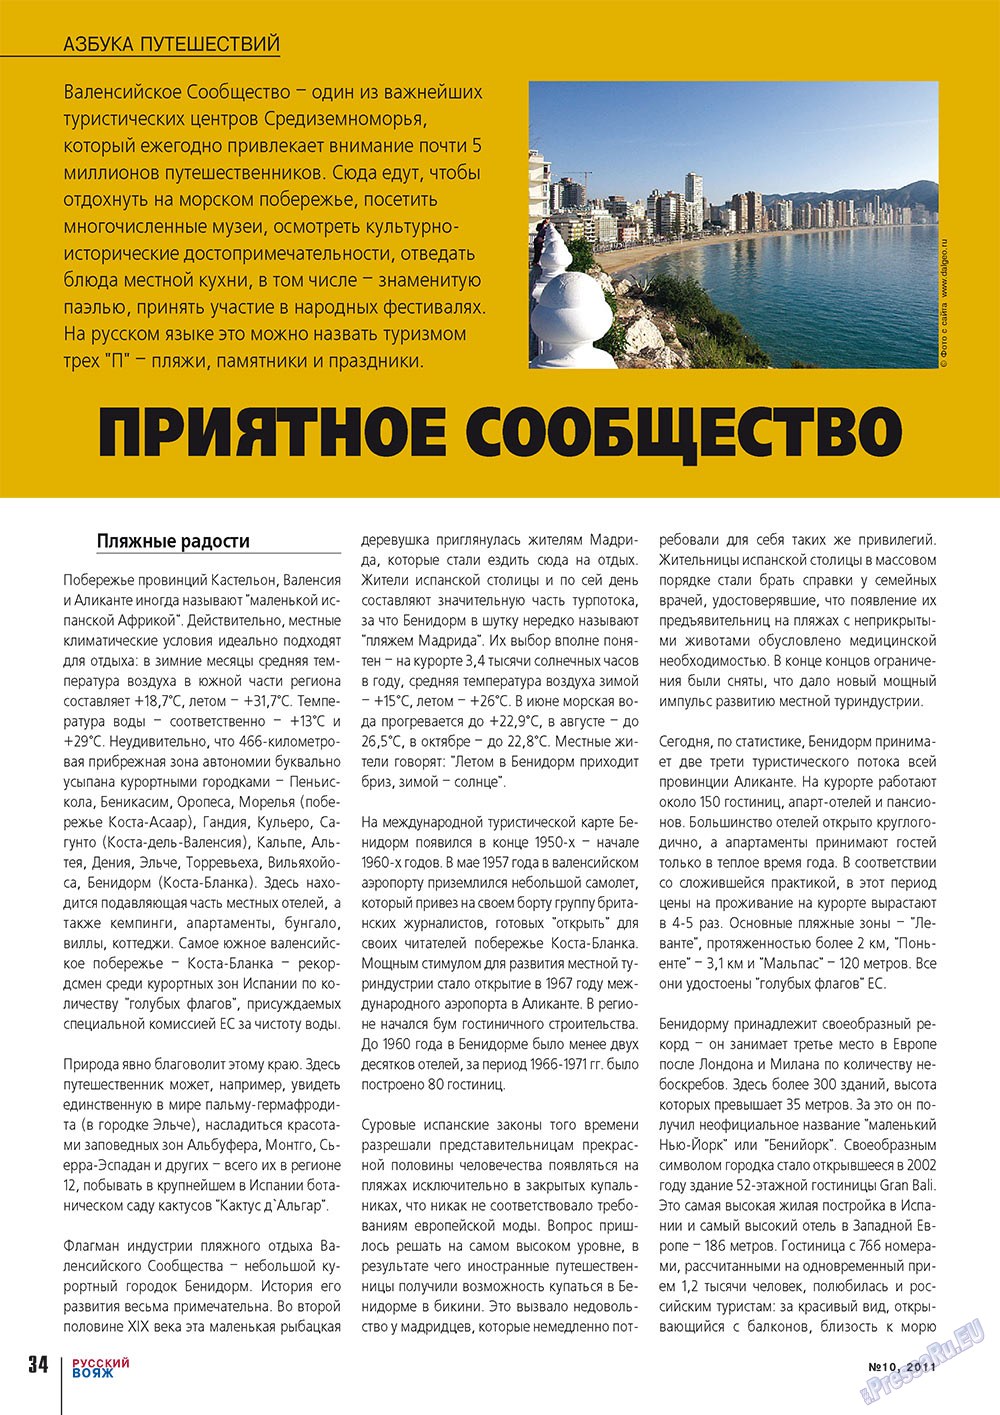 Русский вояж (журнал). 2011 год, номер 10, стр. 34